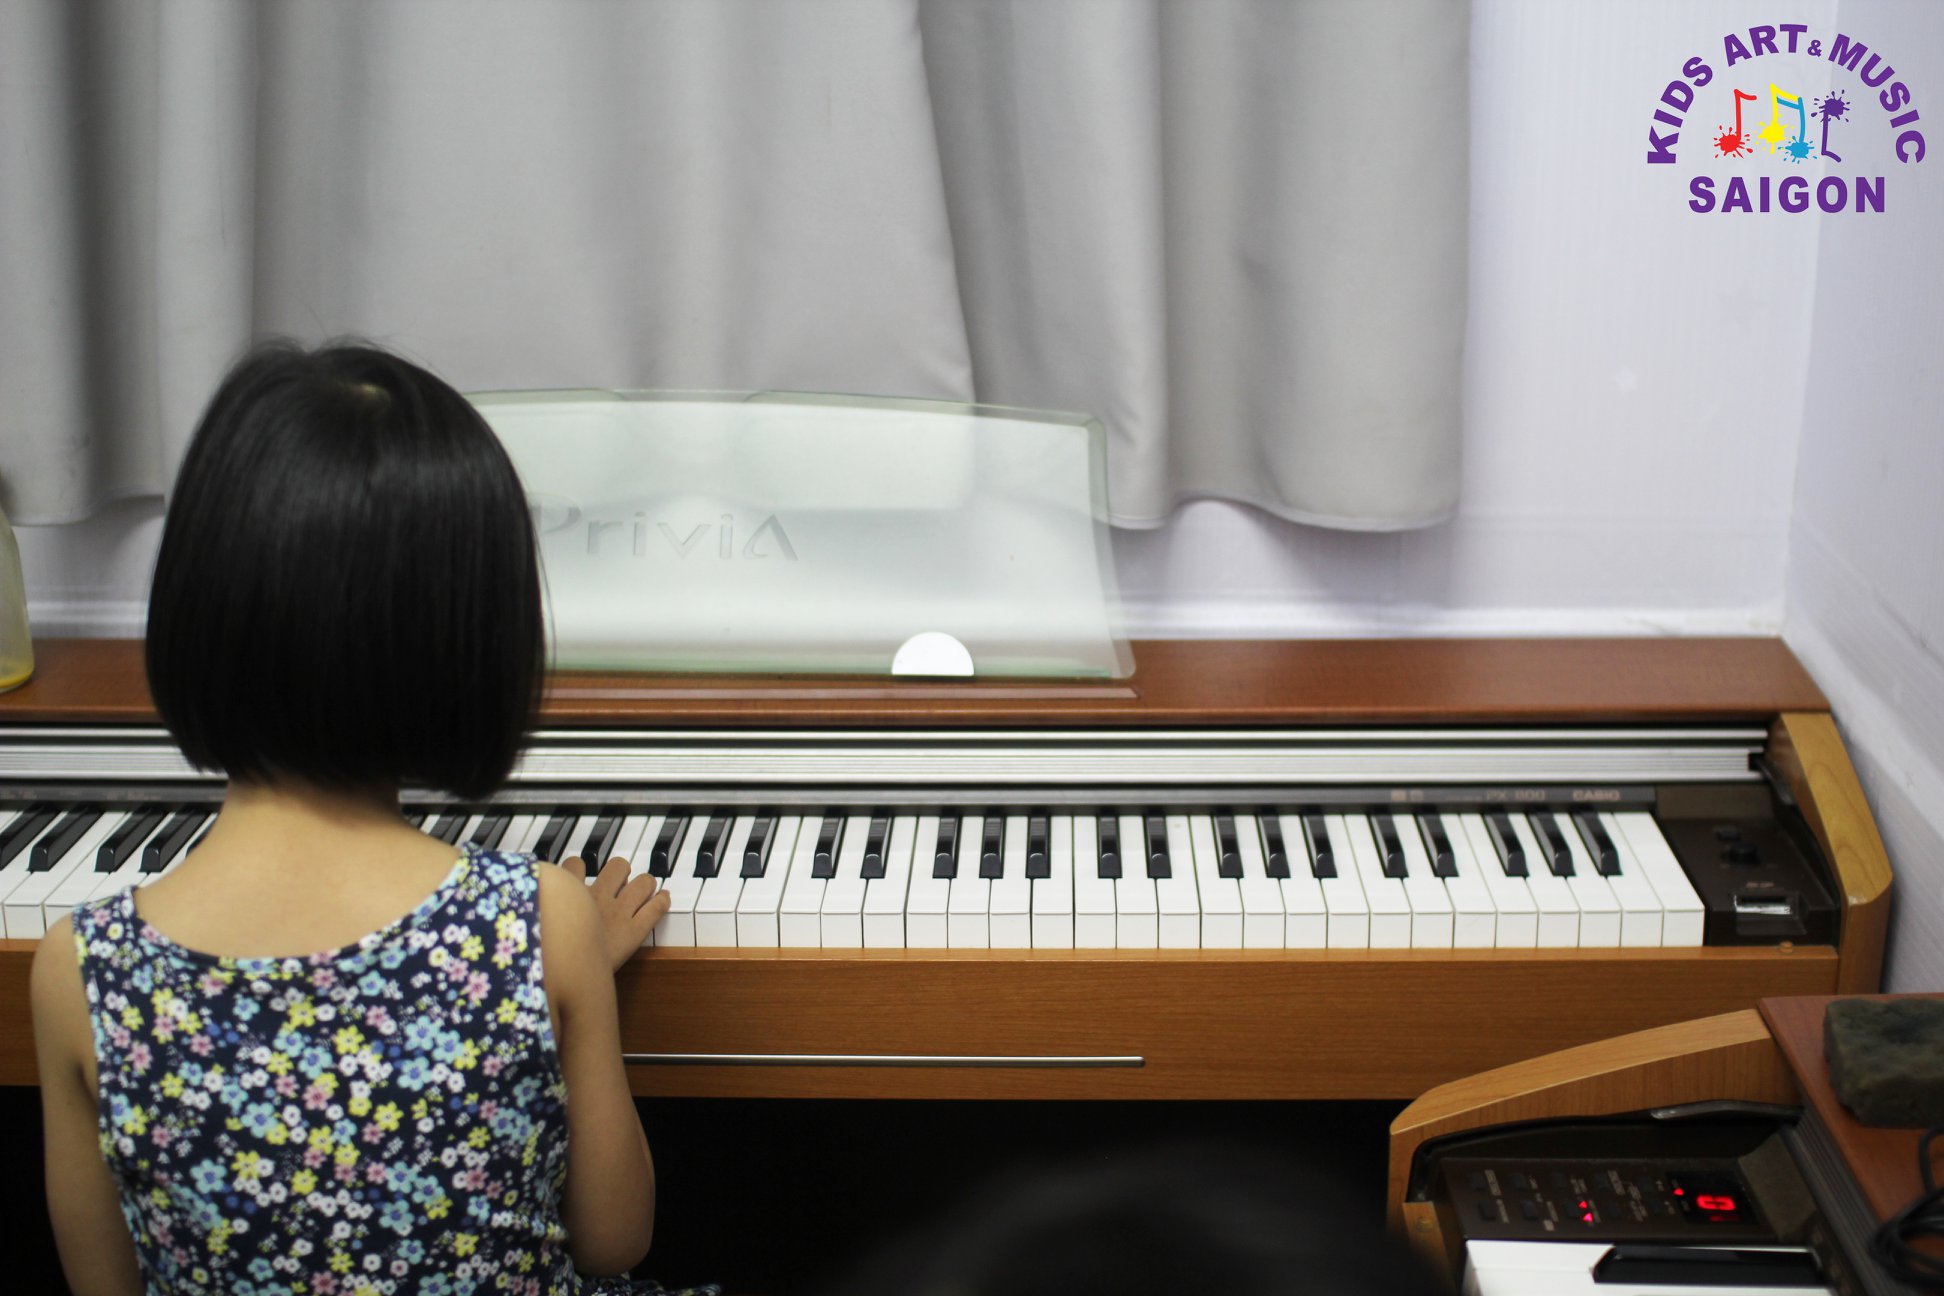 Khi nào ba mẹ nên cho bé bắt đầu tham gia lớp học Piano dành cho trẻ em? Hình ảnh 5